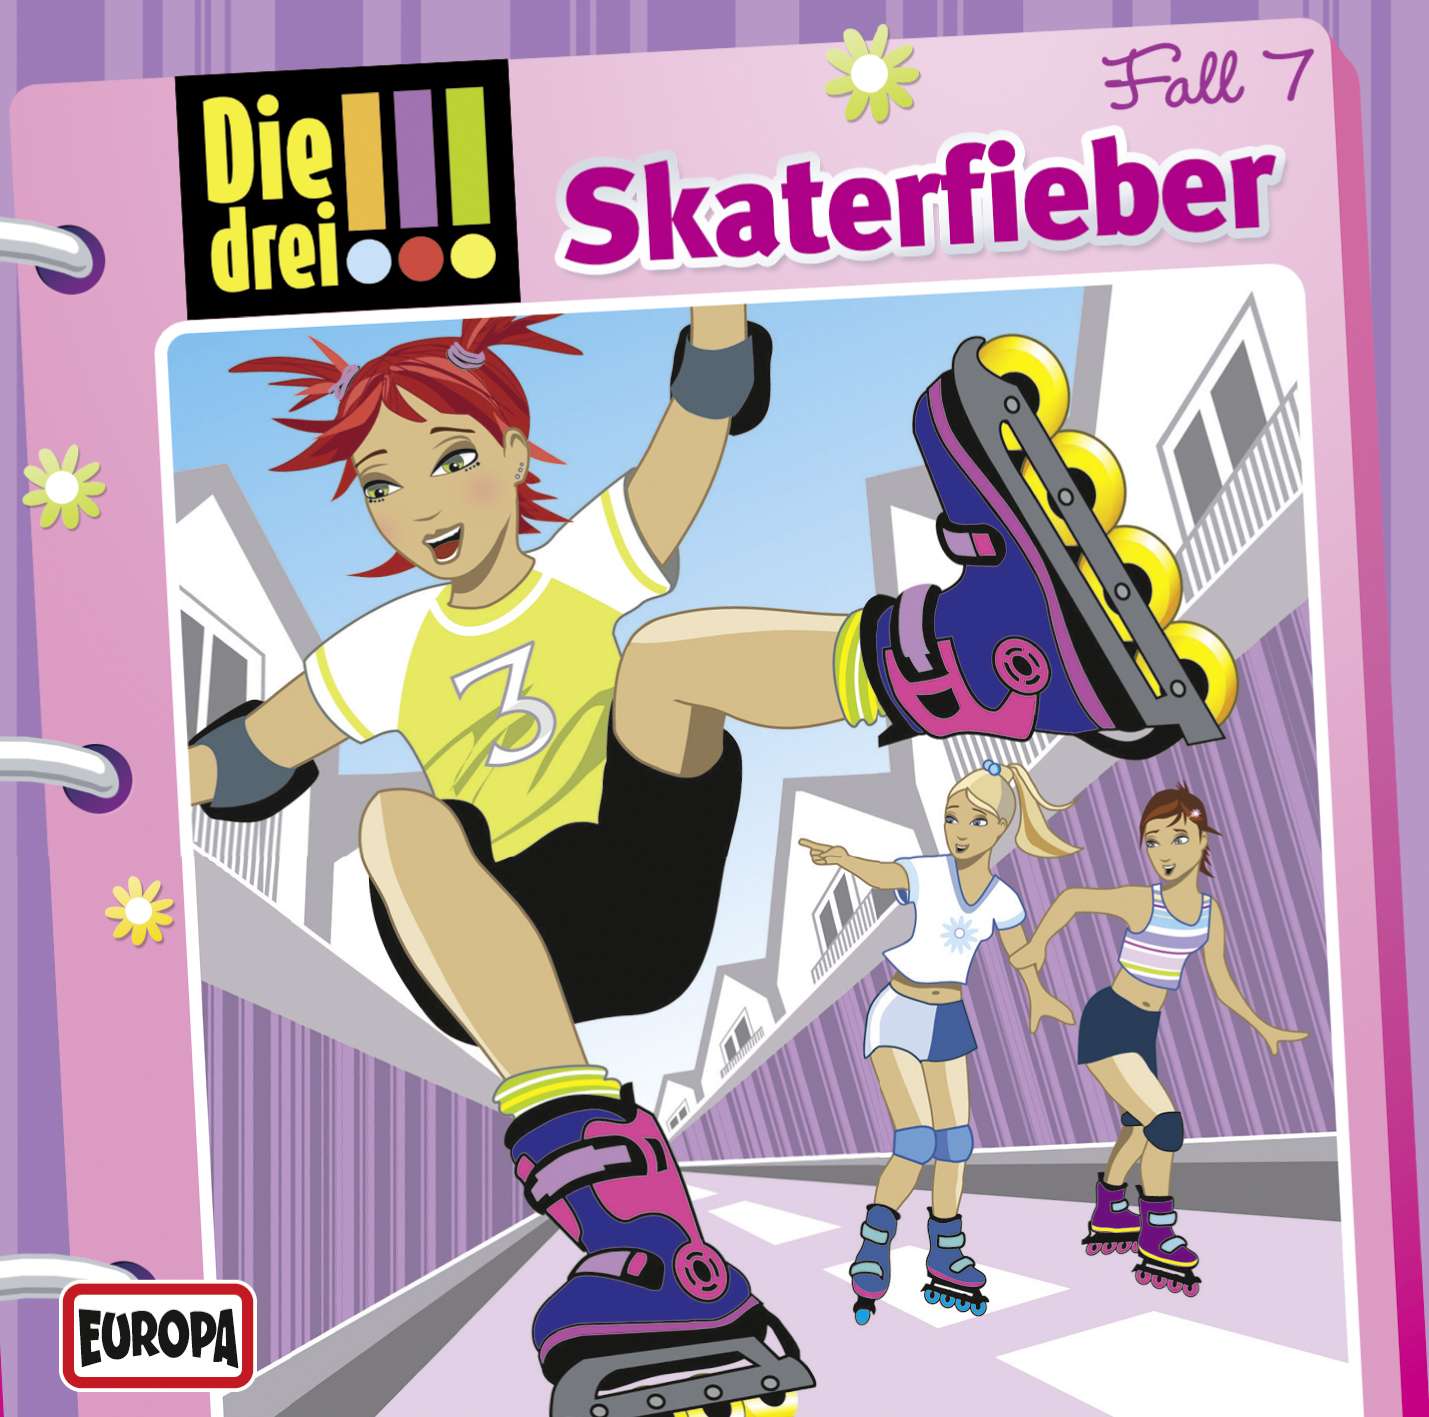 Die drei !!!: Skaterfieber